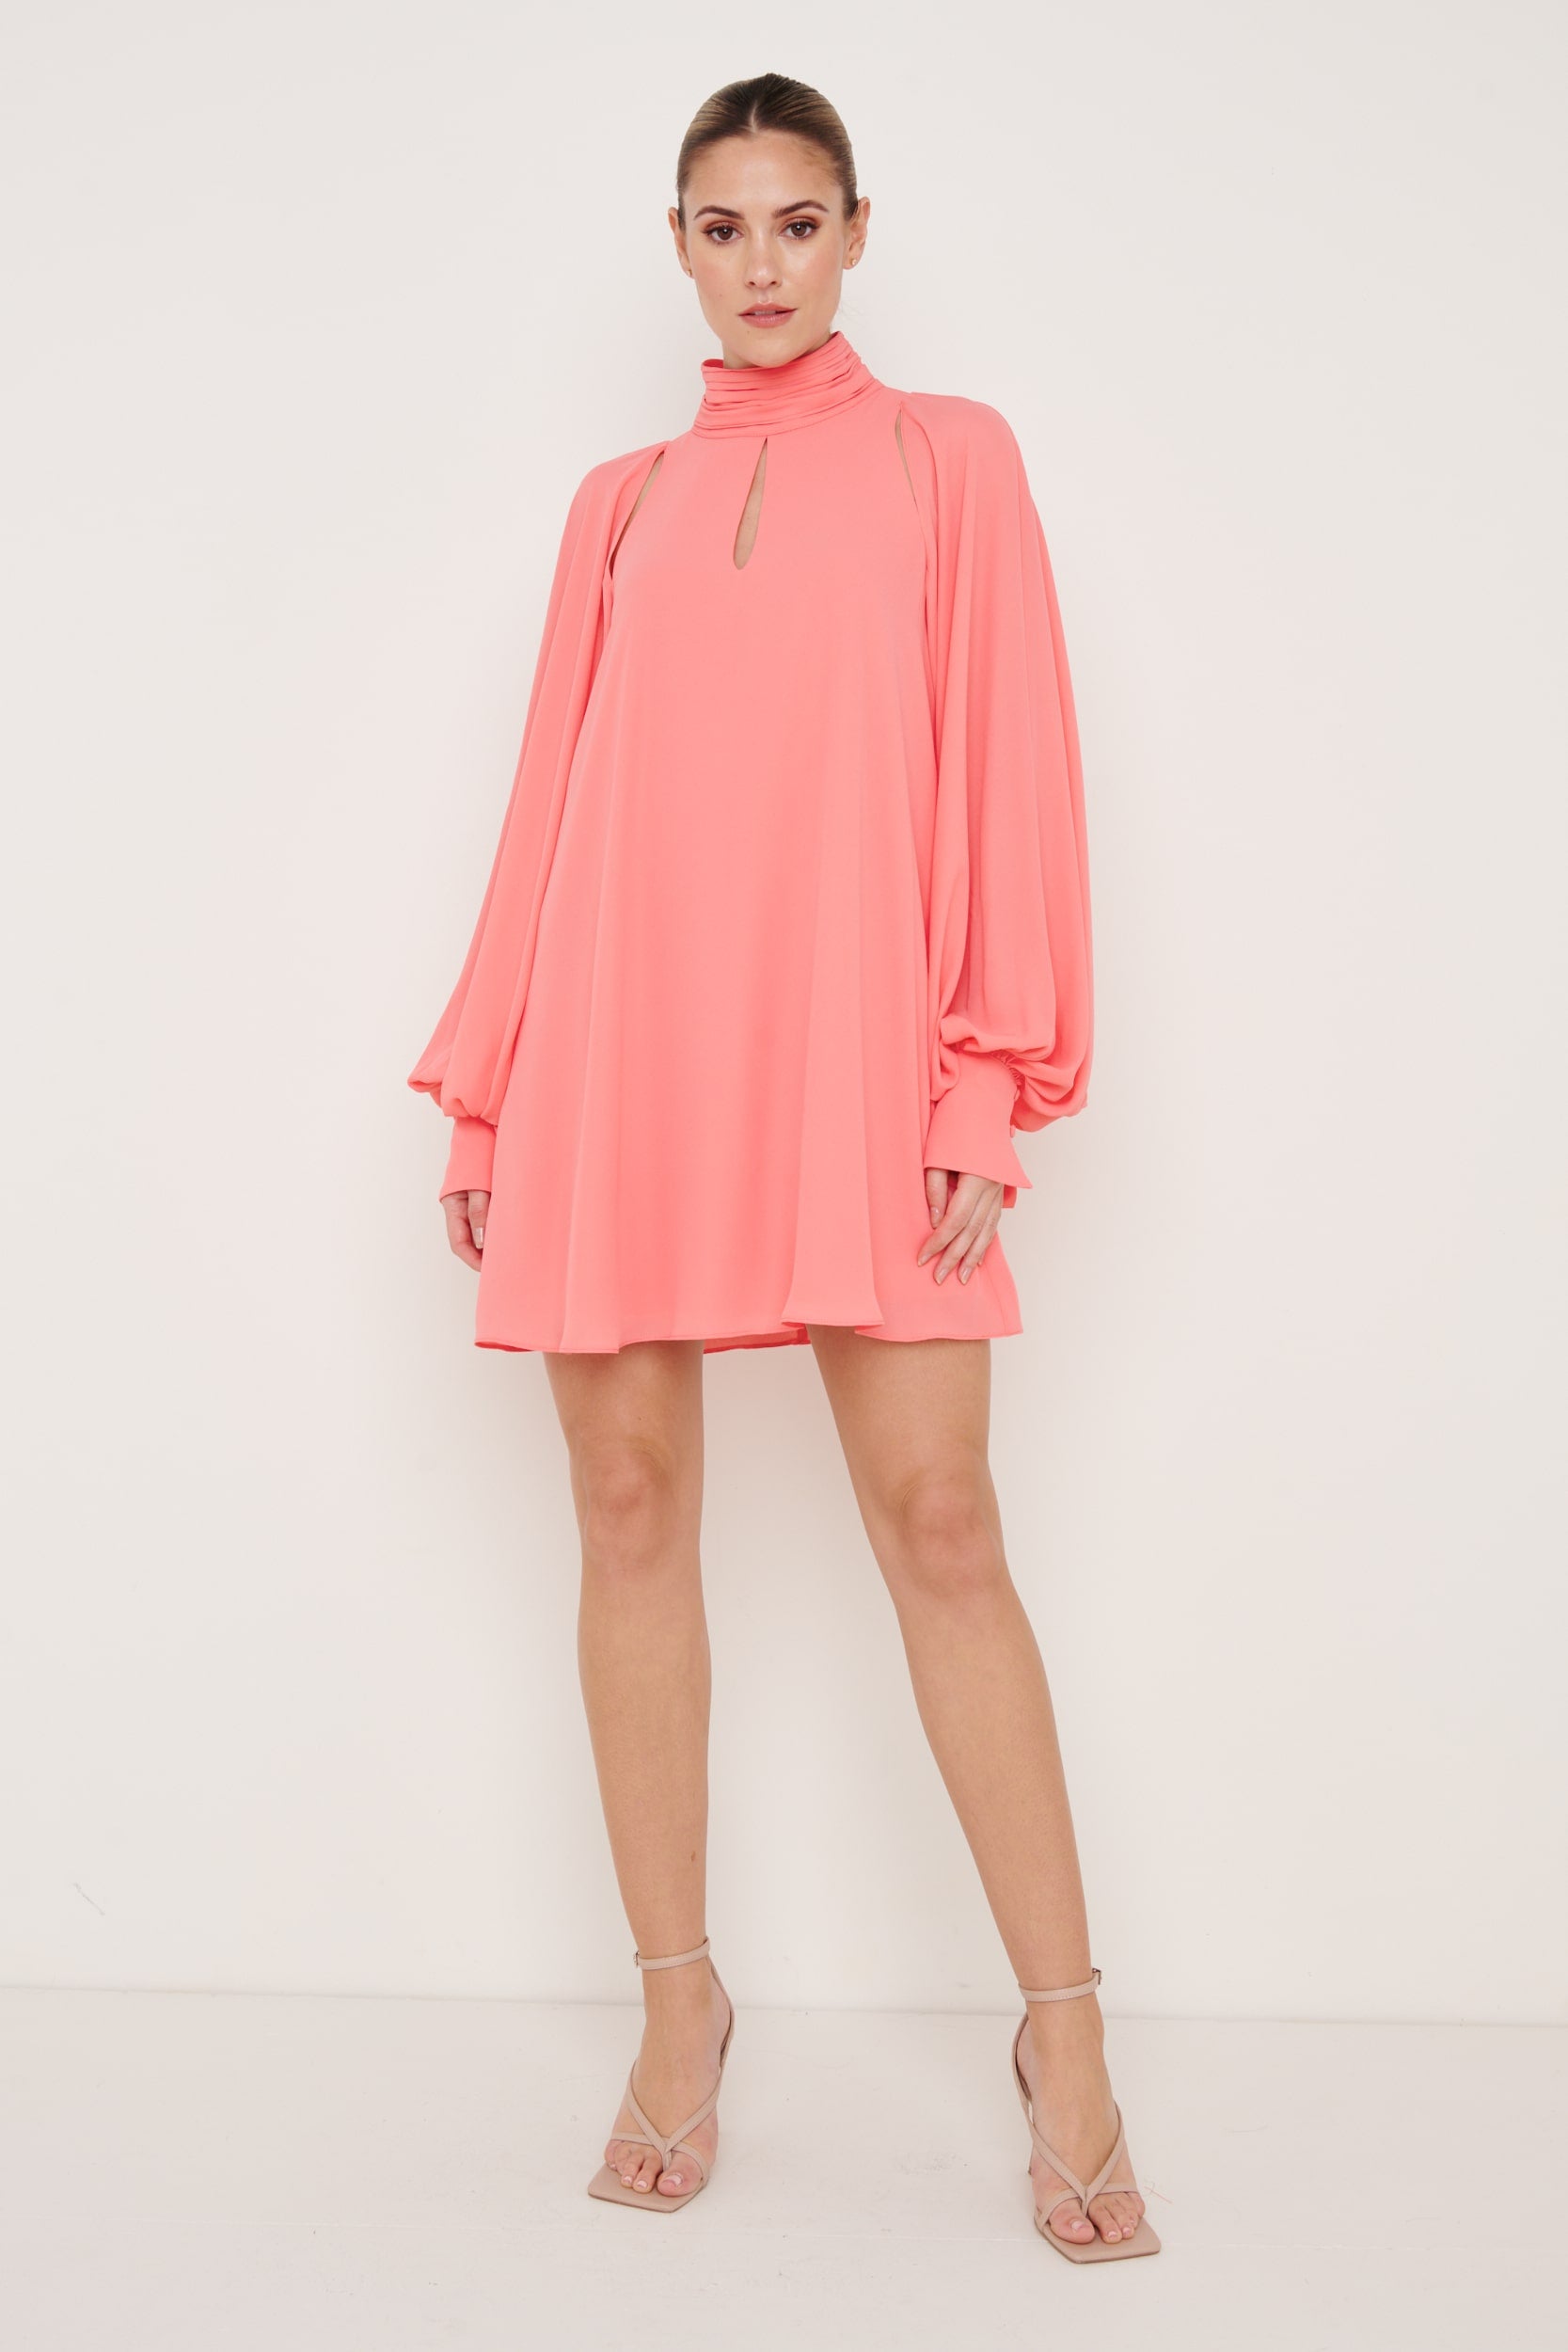 Romy Chiffon Mini Dress - Coral